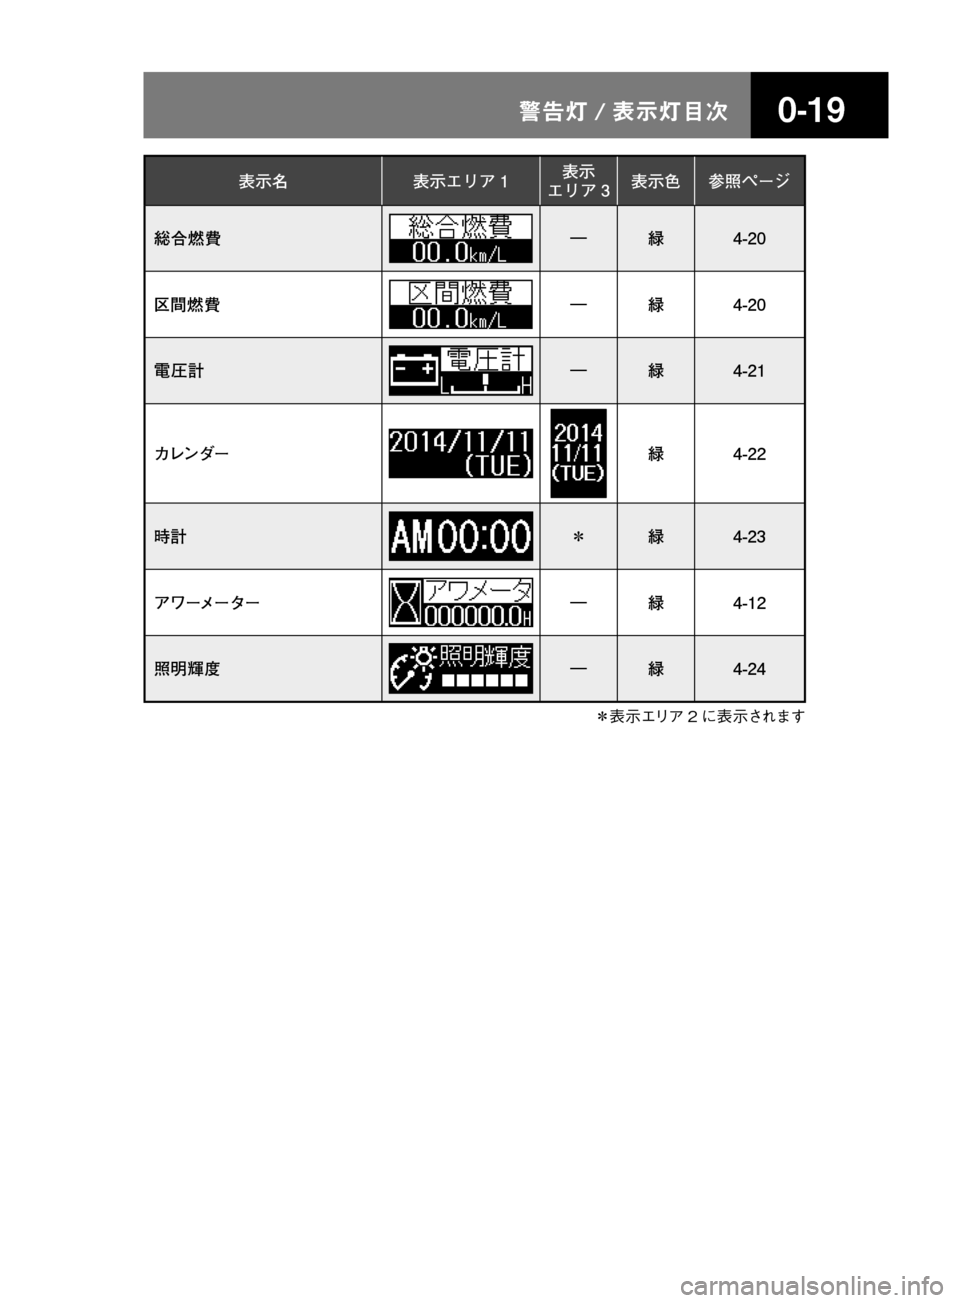 MAZDA MODEL TITAN 2013  タイタン｜取扱説明書 (in Japanese) ����/n � 
